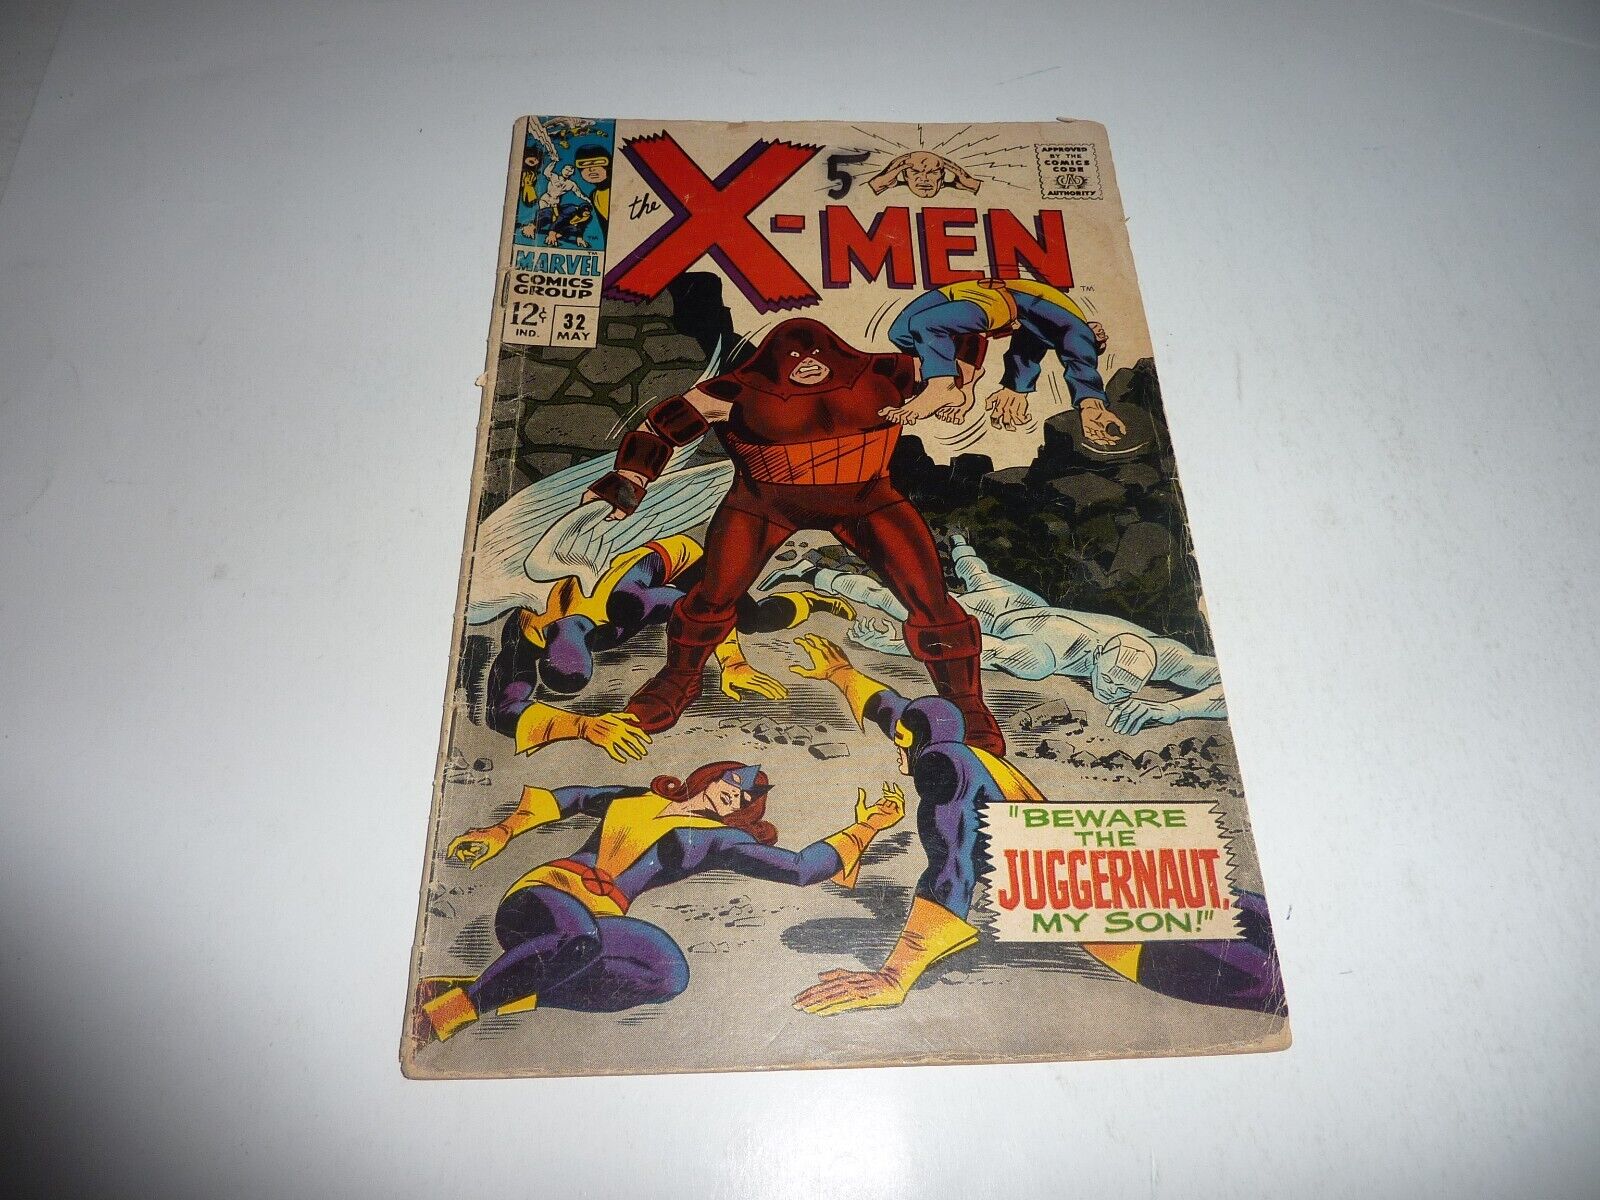 THE X-MEN #32 Marvel Comics 1967 Juggernaut Cover & App. GD+ 2.5 Complete Copy